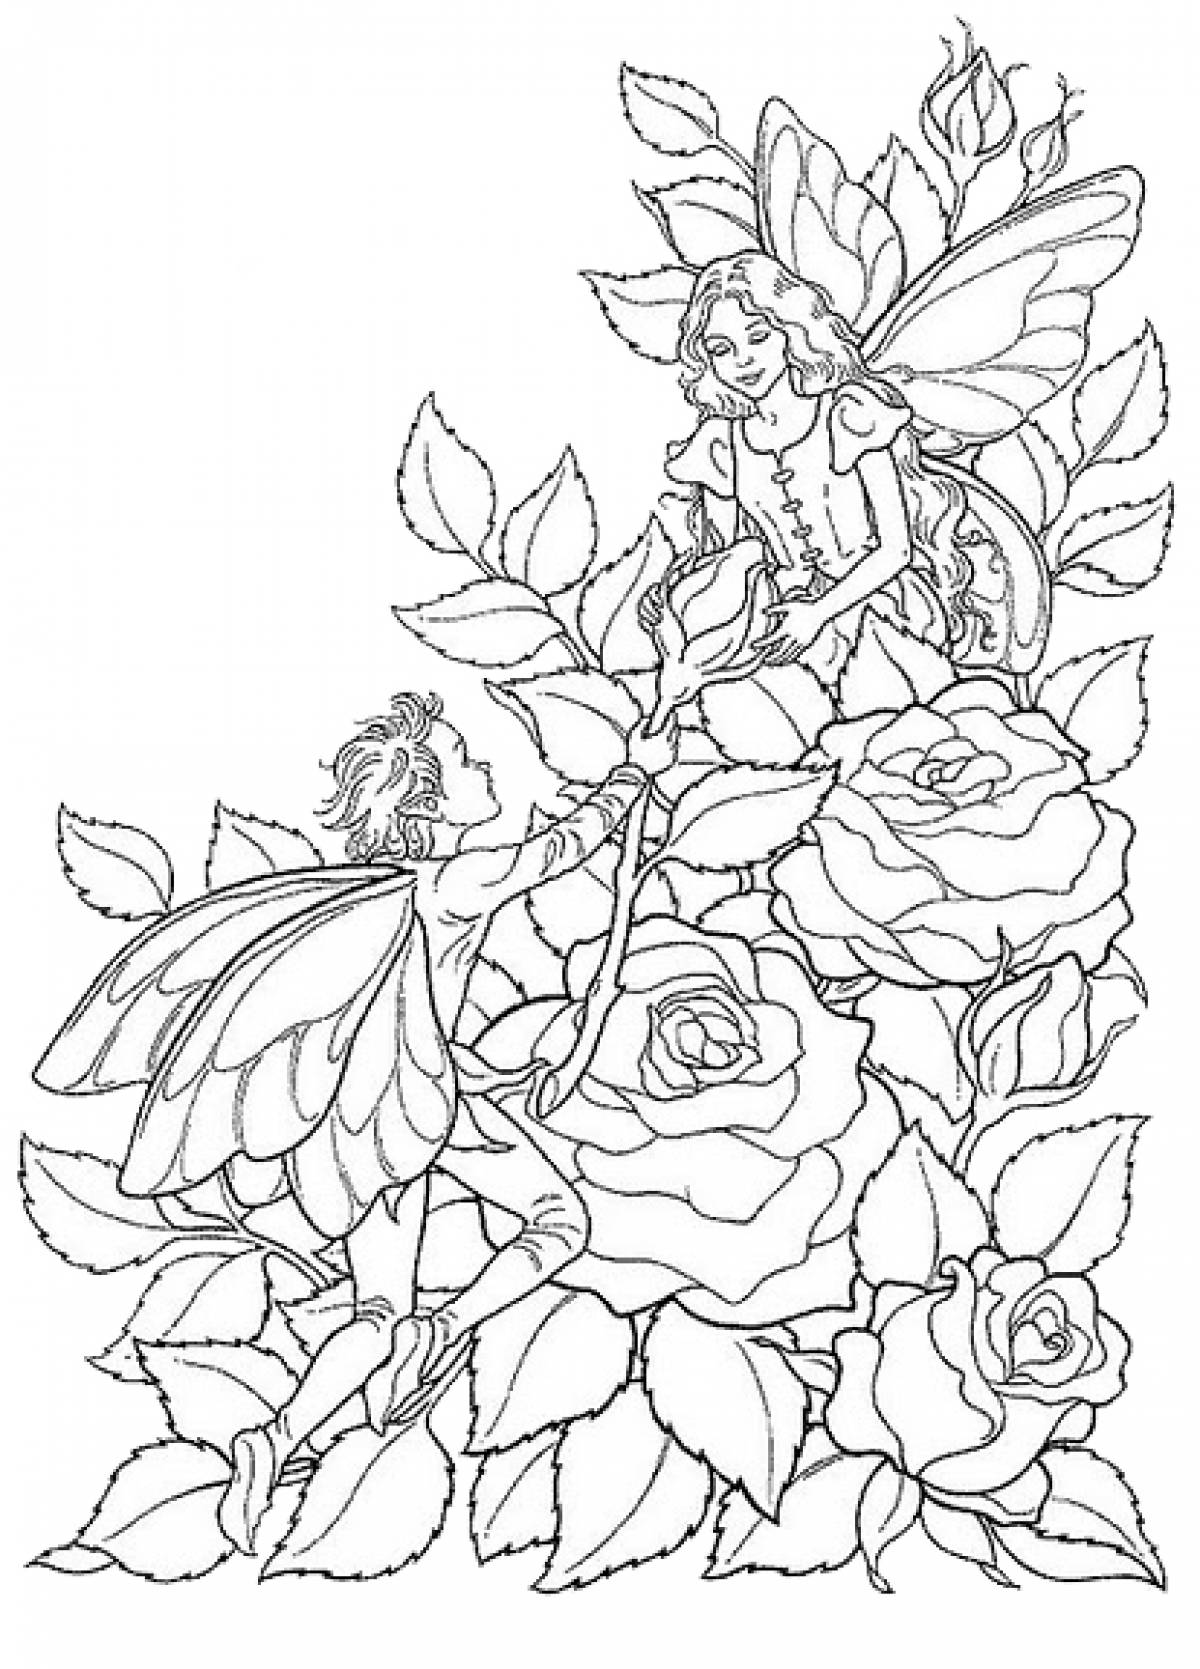 Thumbelina roses